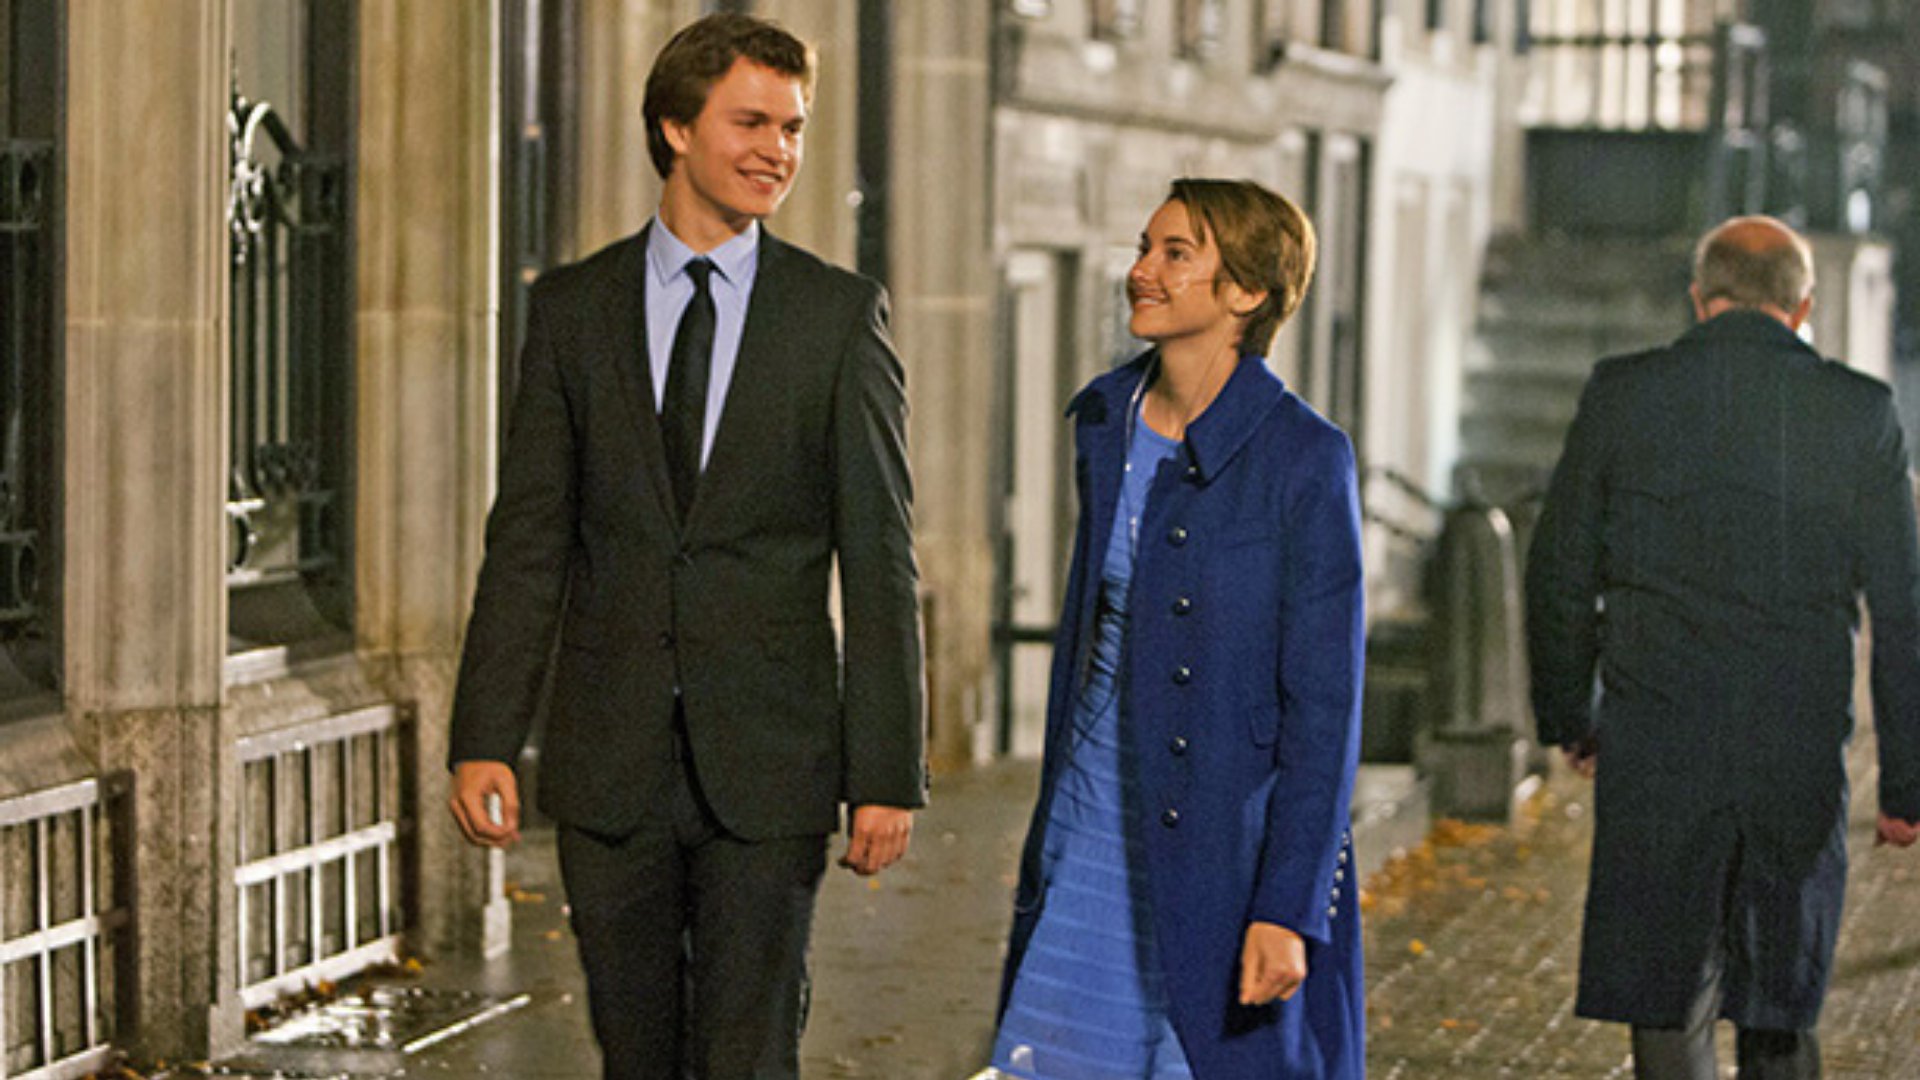 Hazel e Gus andando pelas ruas de Amsterdã enquanto conversam e dão risada